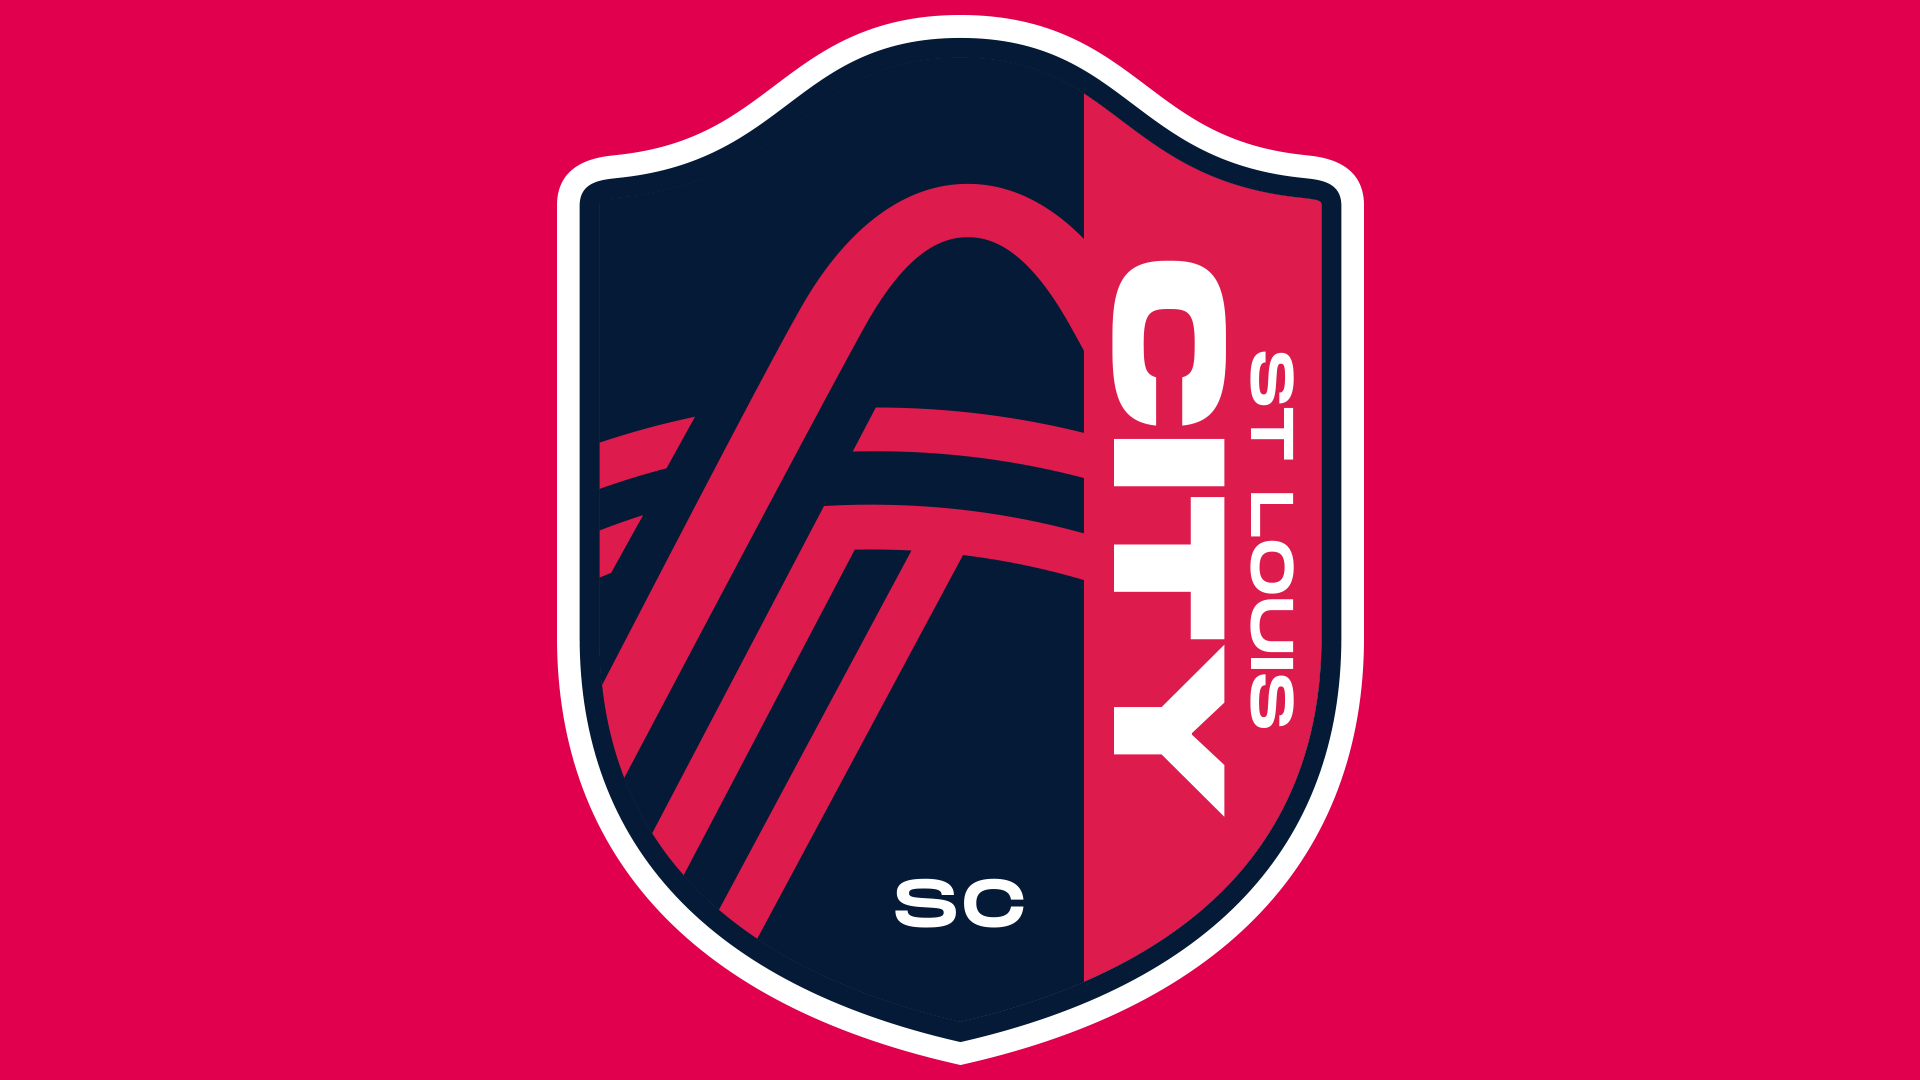 St. Louis City SC : MLS Fan Shop : Target